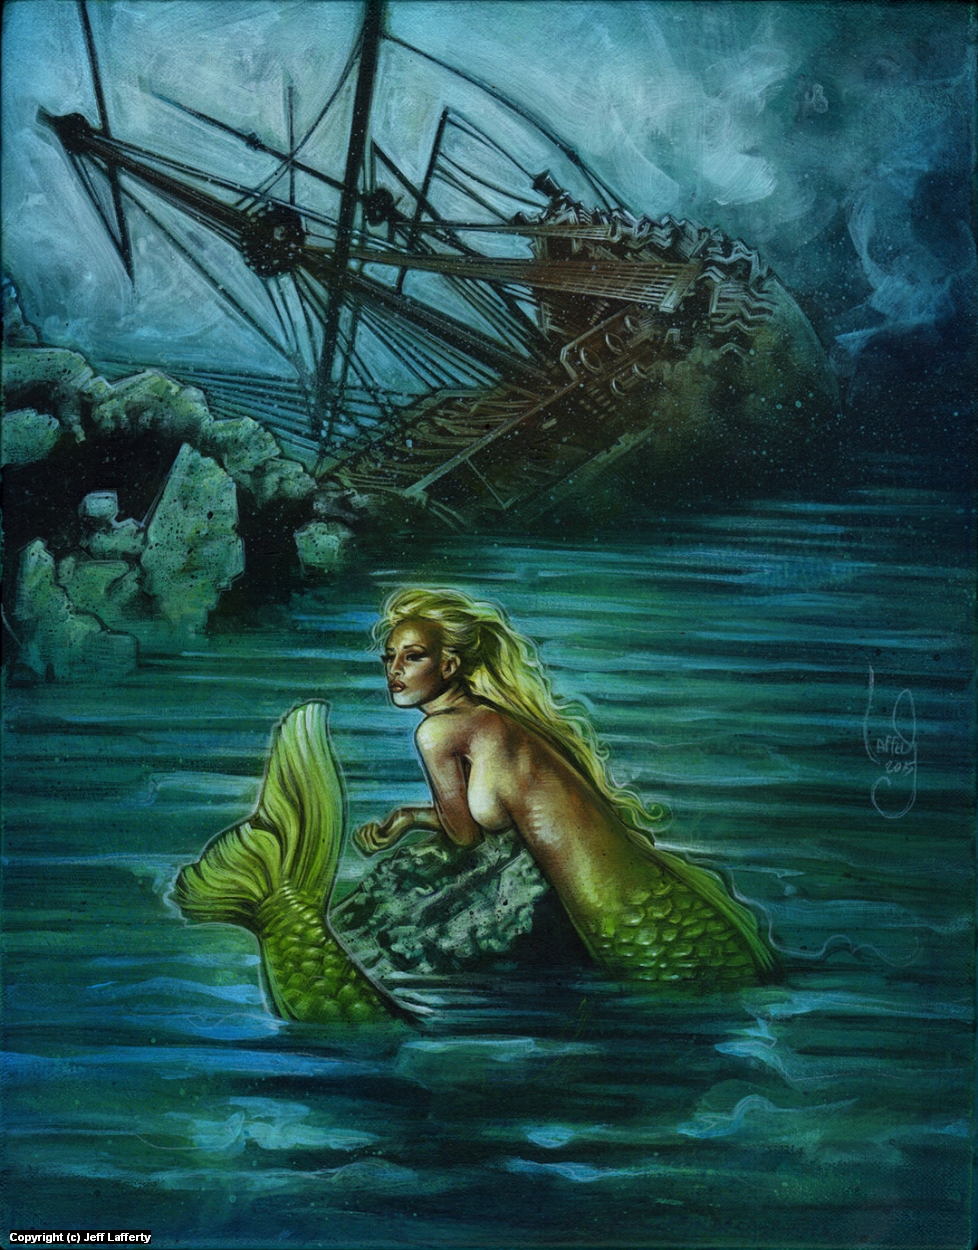 Infected By Art » Art Gallery » Jeff Lafferty » Mermaid in Fantasy Art